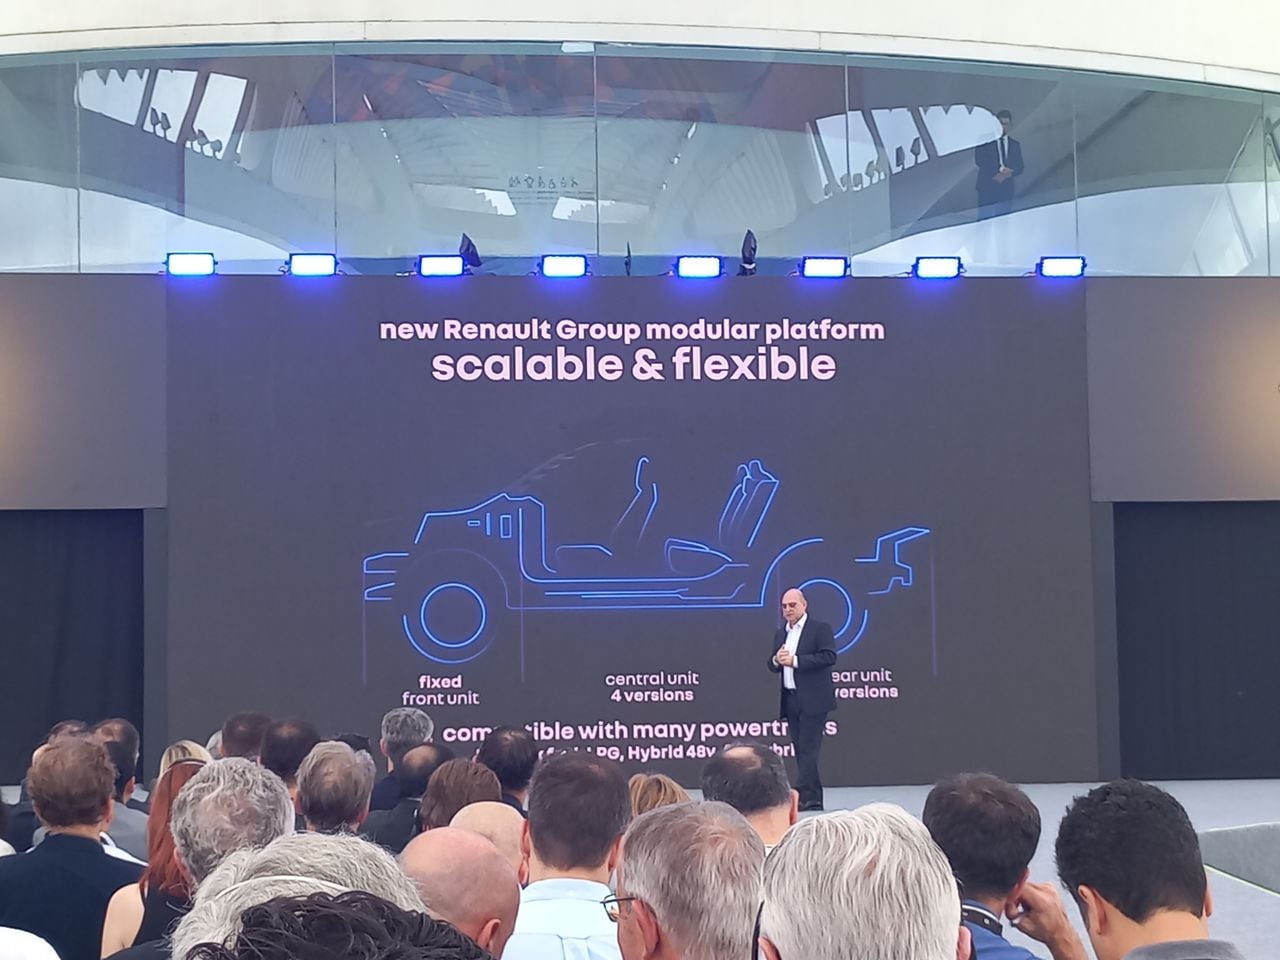 Renault ensamblará sus vehículos en dos nuevas plataformas